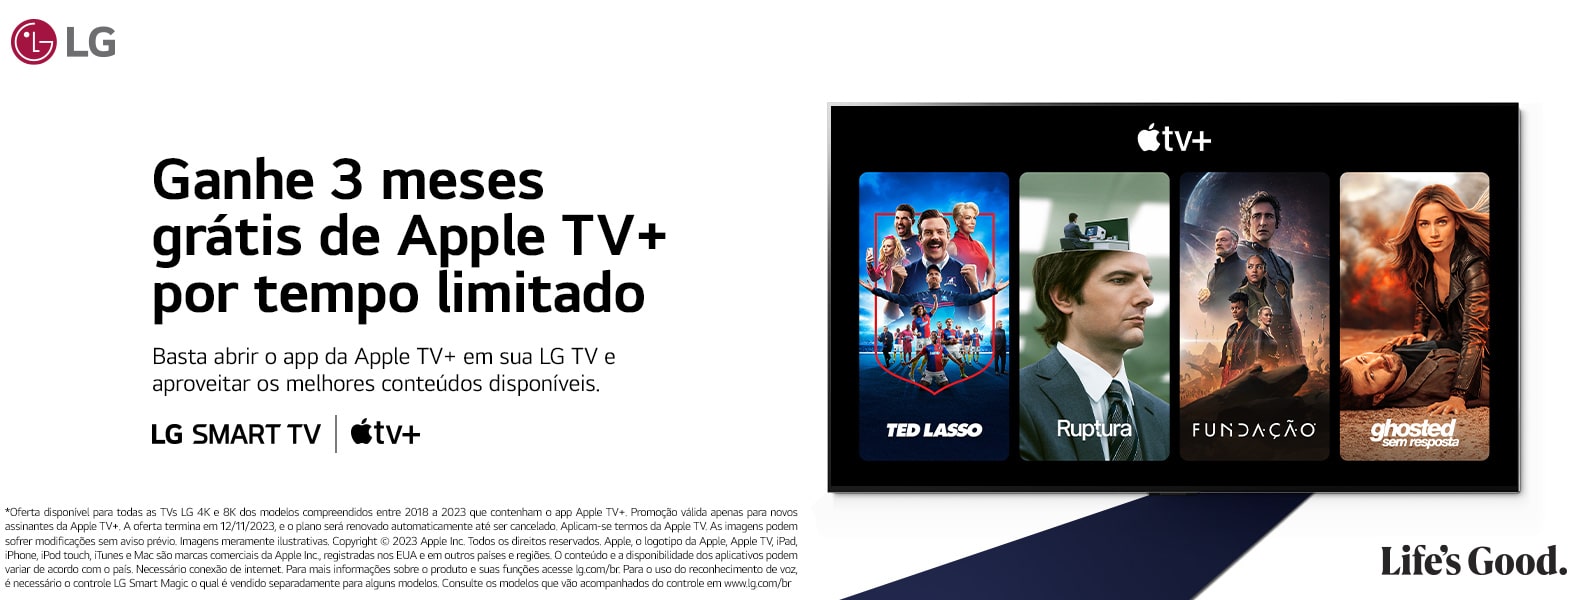 Oferta da LG para o Apple TV+